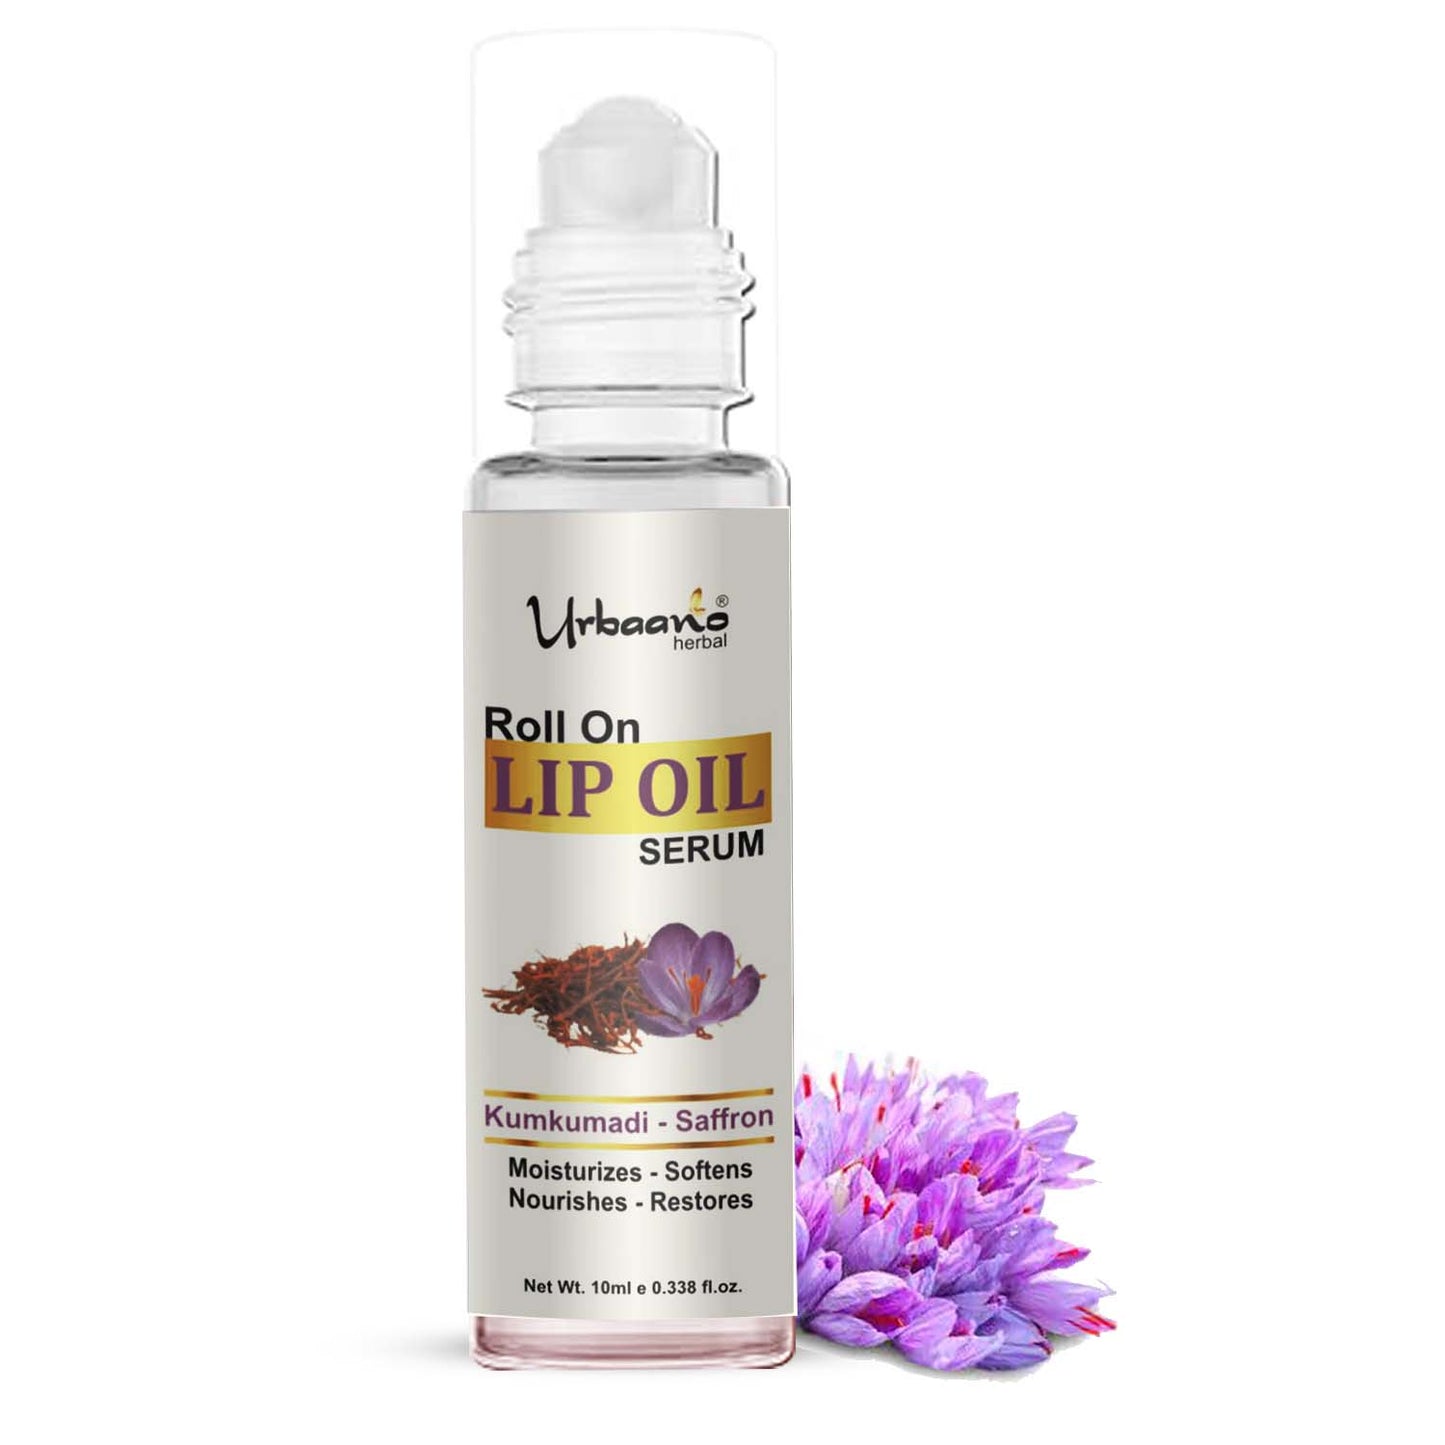 urbaano herbal kumkumadi lip oil serum for soft, smooth lips